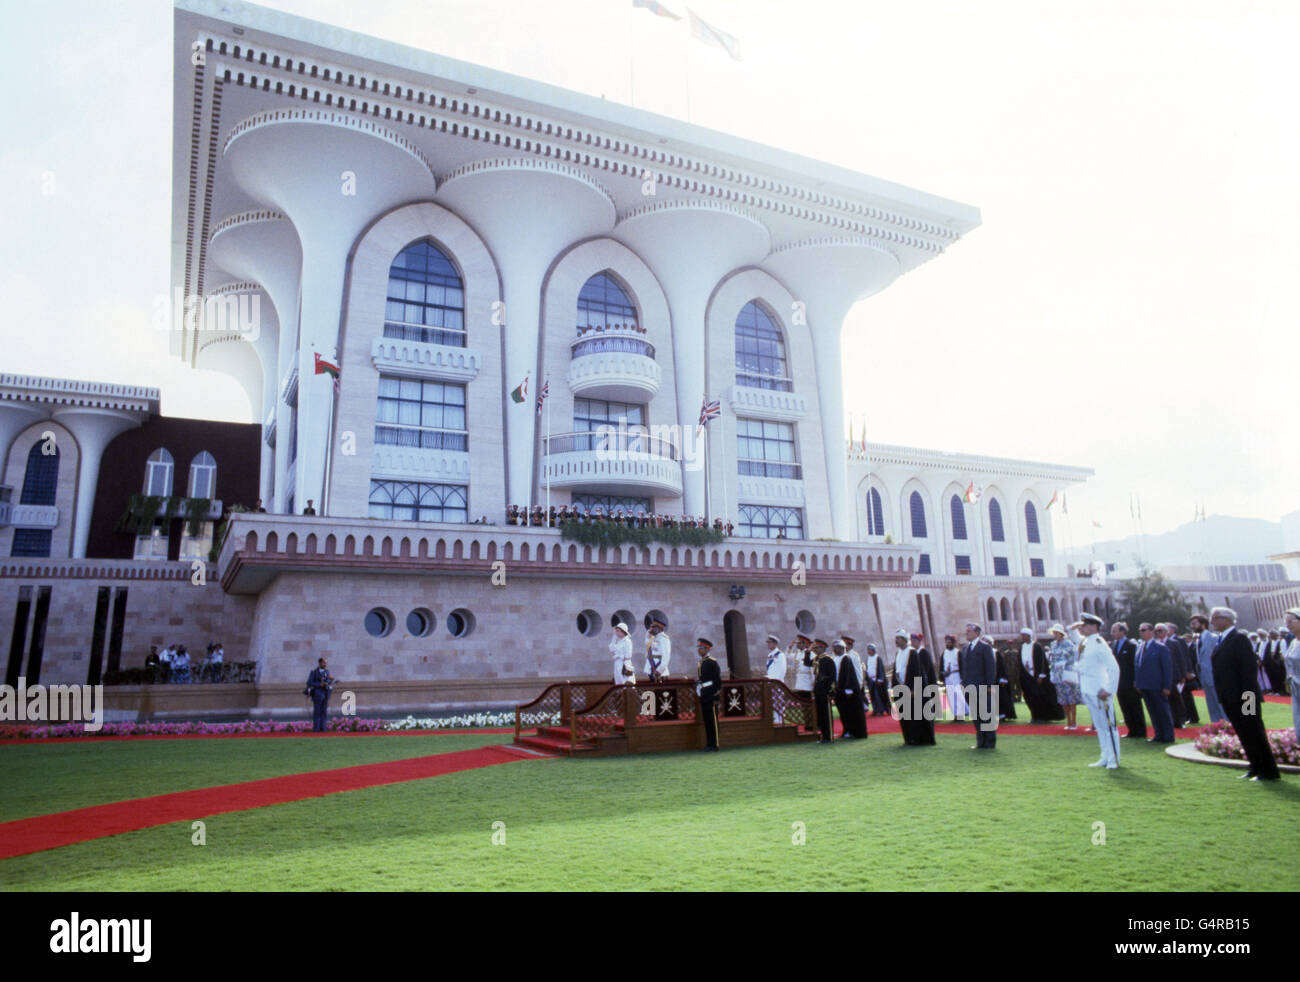 La reine Elizabeth II, debout aux côtés du sultan d'Oman, a déclaré le sultan Qaboos bin, alors qu'ils prennent le salut pendant le jeu de l'hymne national dans le domaine du palais de Muscat. Banque D'Images